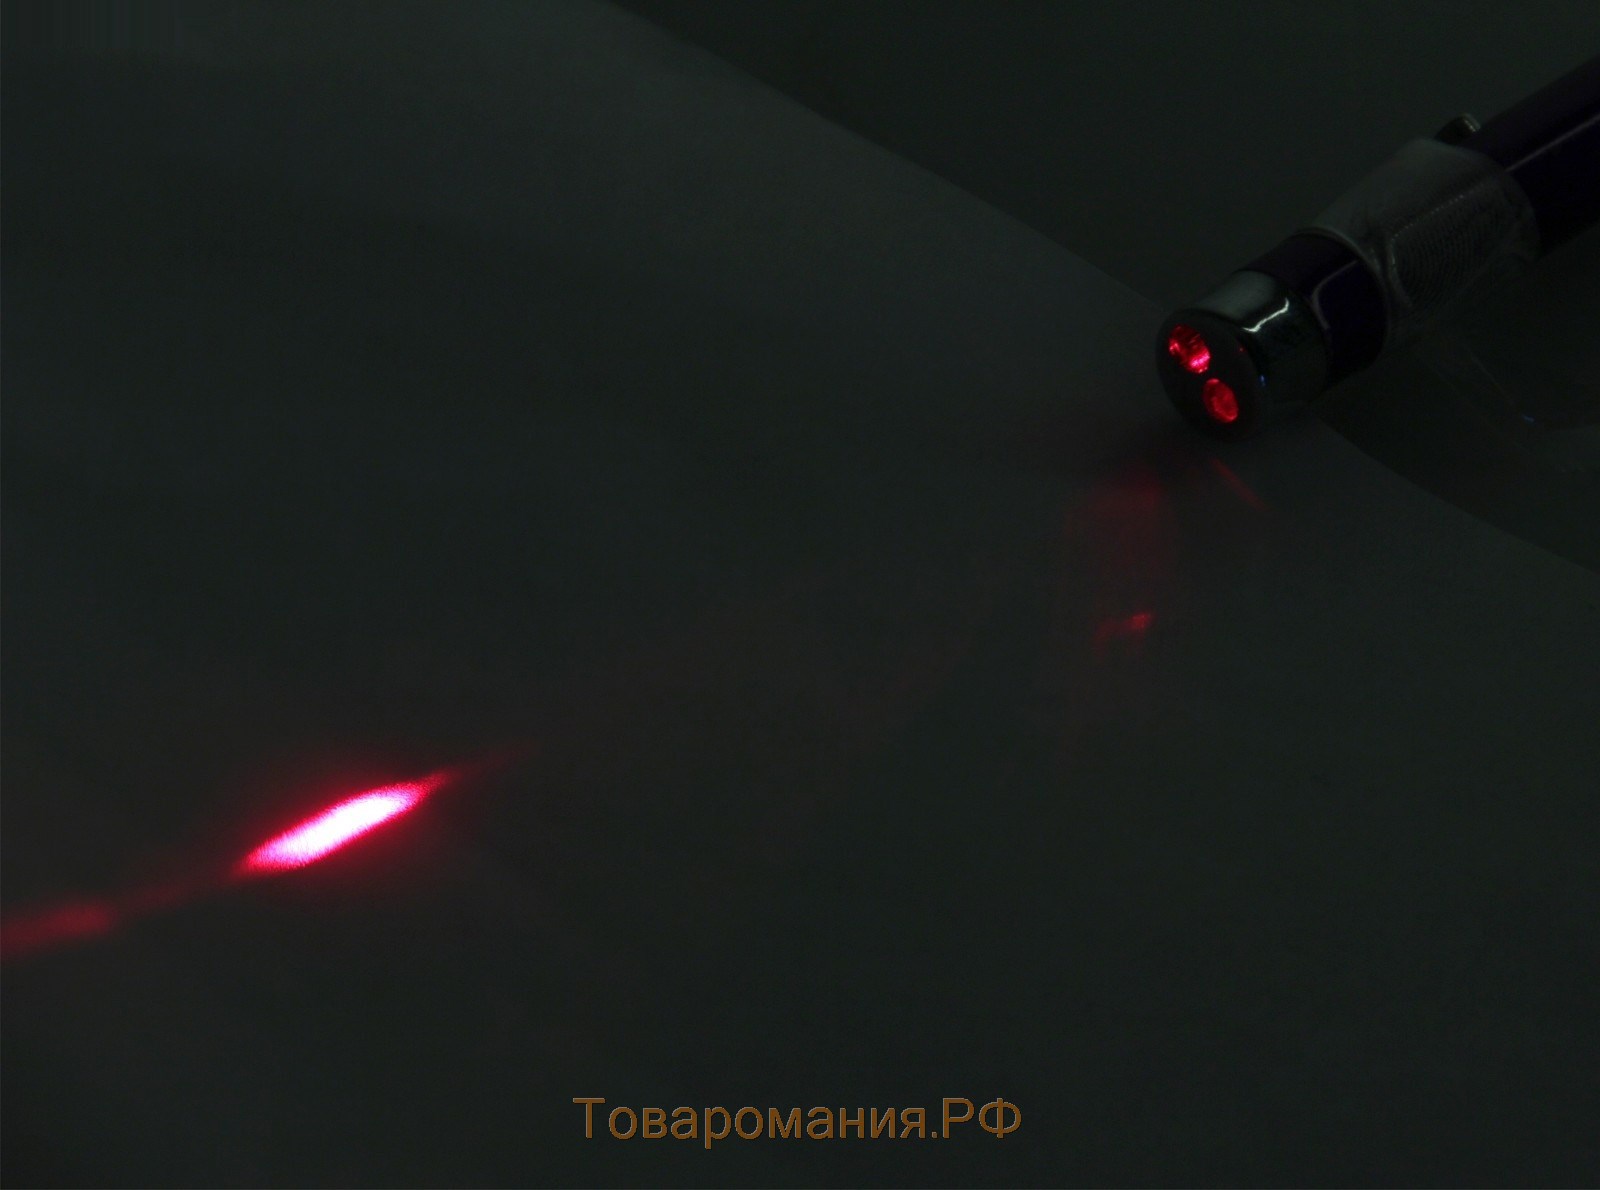 Ручка многофункциональная, лазерная указка со светодиодной подсветкой, 13.5 х 1 см